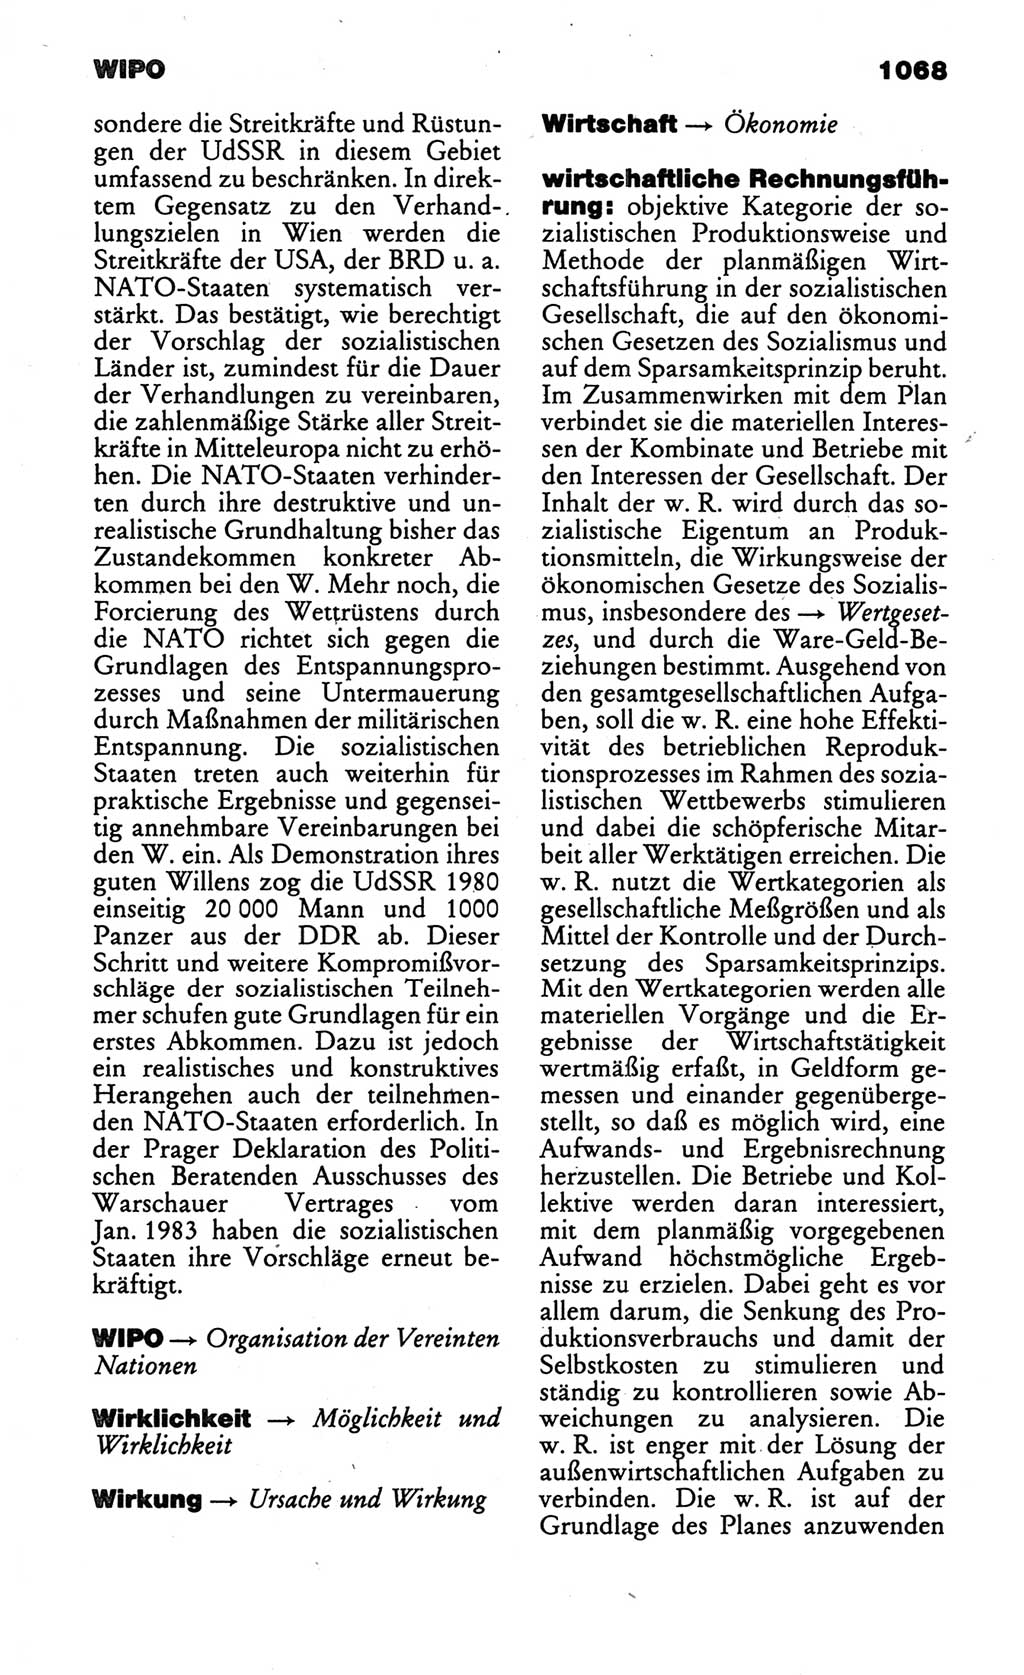 Kleines politisches Wörterbuch [Deutsche Demokratische Republik (DDR)] 1986, Seite 1068 (Kl. pol. Wb. DDR 1986, S. 1068)